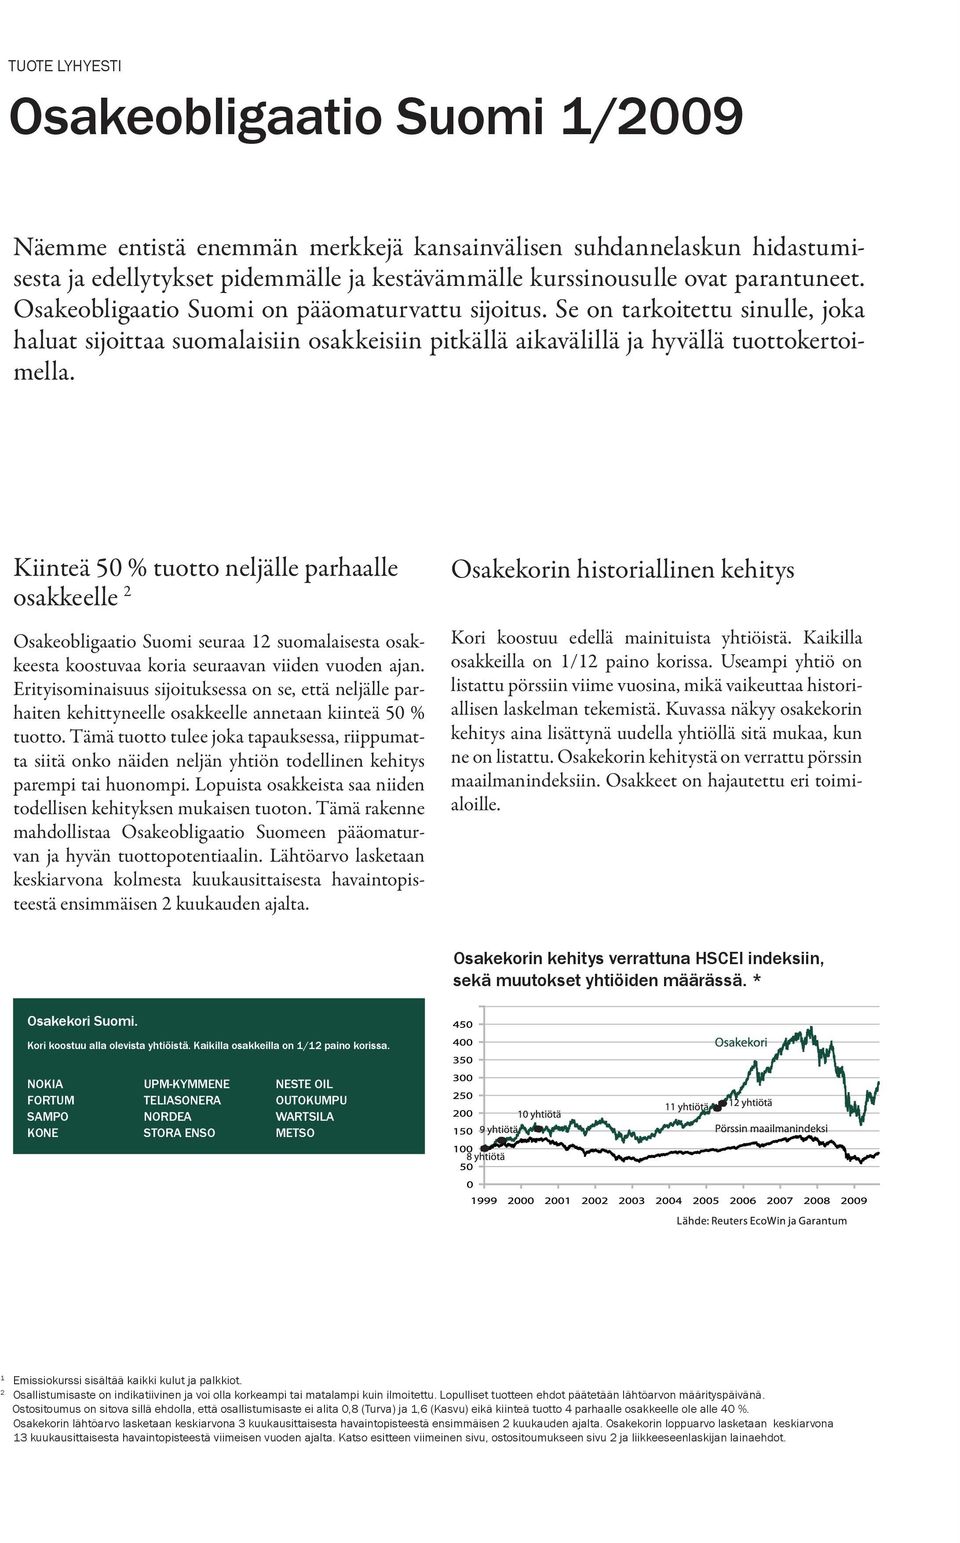 Kiinteä 50 % tuotto neljälle parhaalle osakkeelle 2 Osakeobligaatio Suomi seuraa 12 suomalaisesta osakkeesta koostuvaa koria seuraavan viiden vuoden ajan.